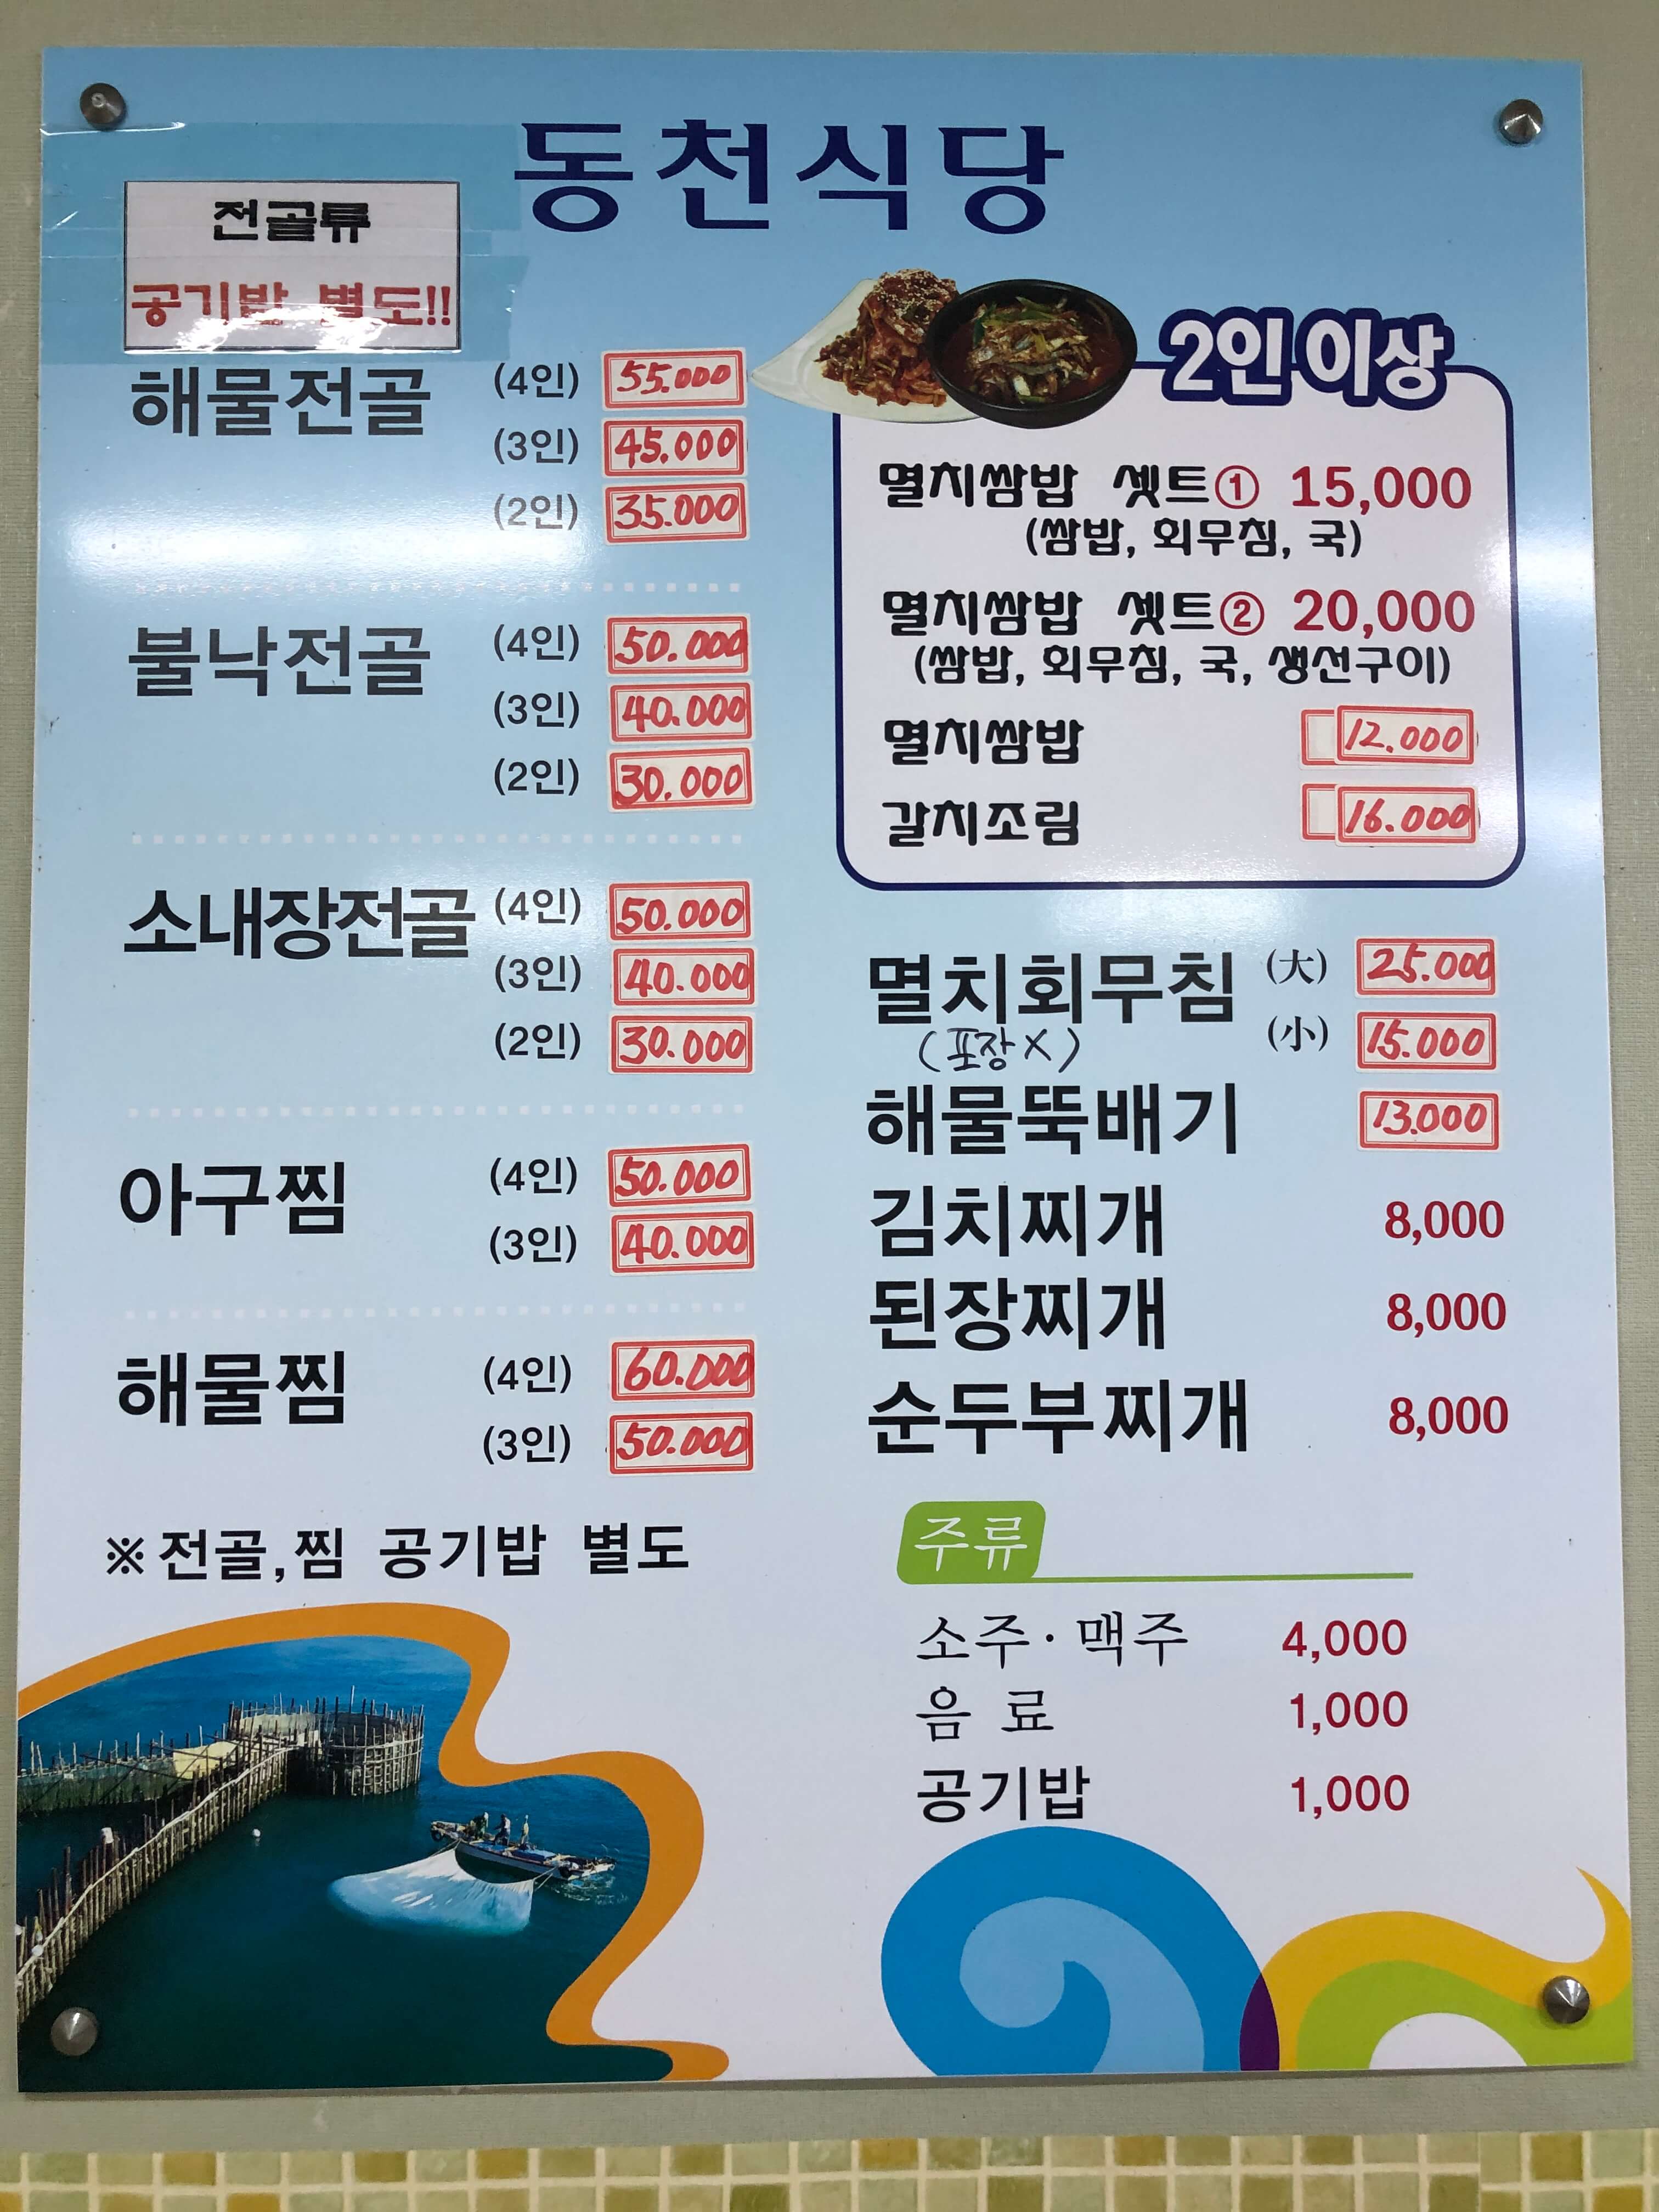 민수랜드-남해동천식당 메뉴구성표